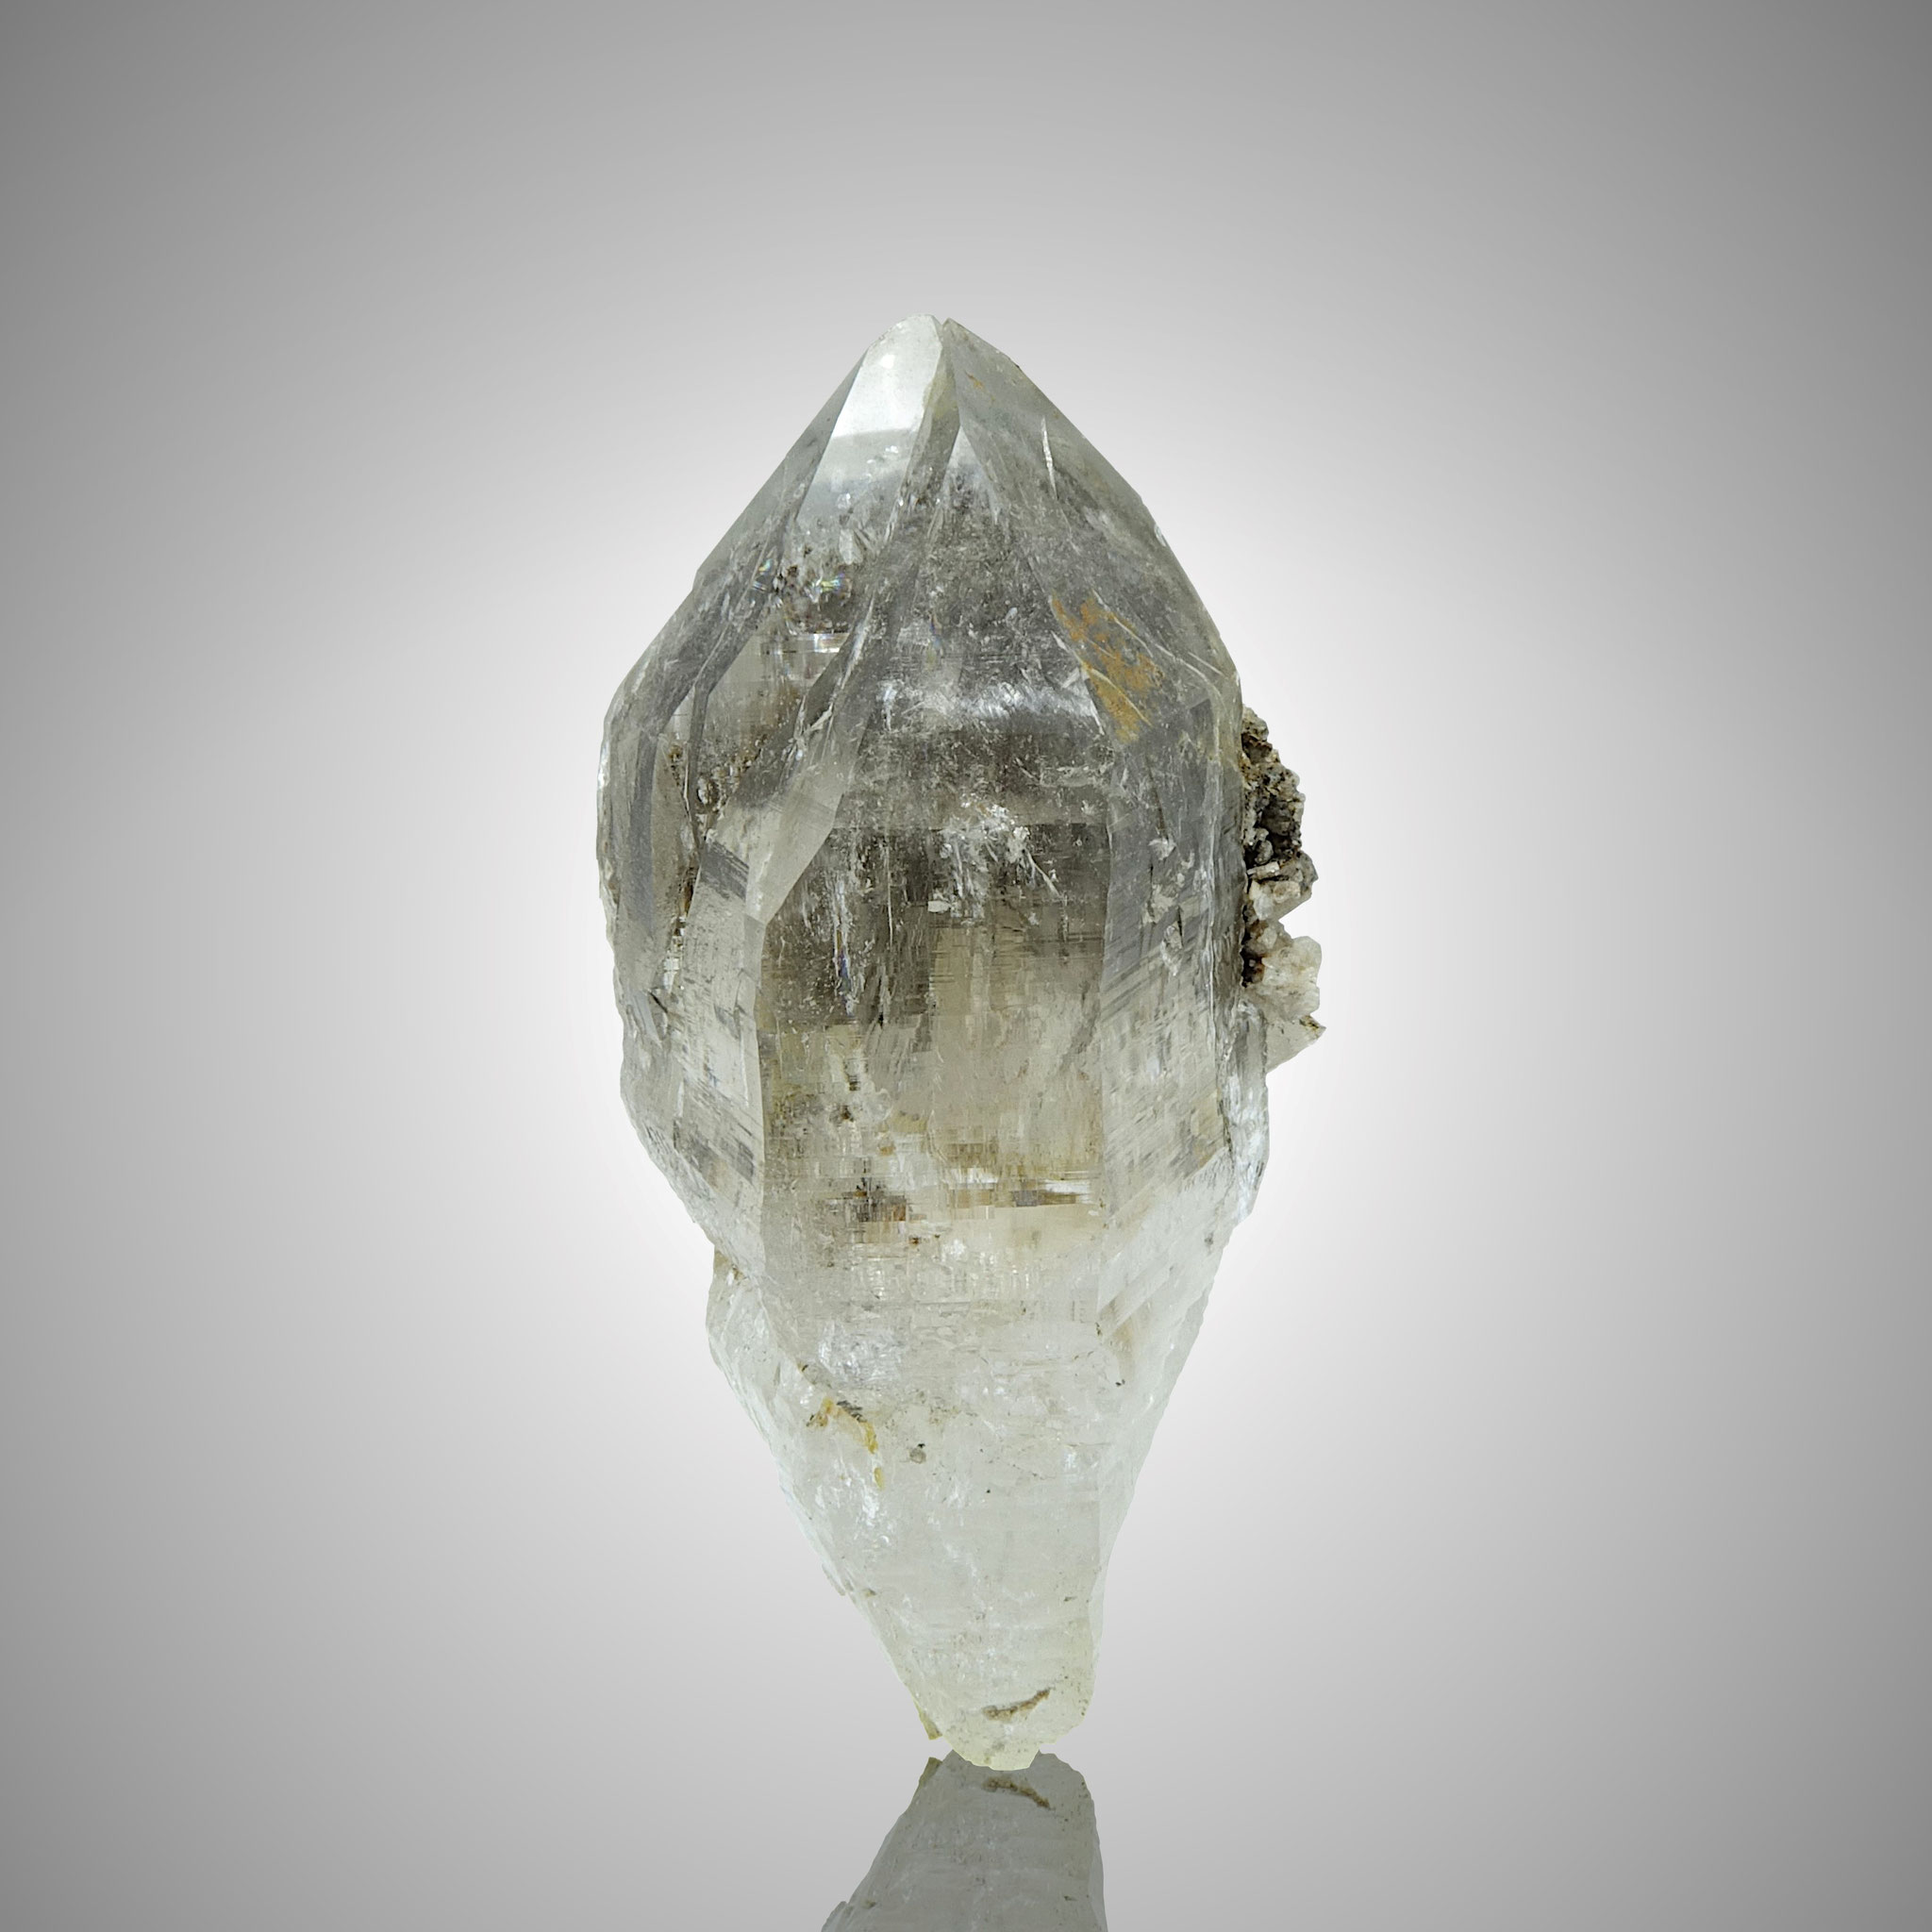 Bergkristall/Albit, szepterähnlicher Aufbau, "Ameliekluft" Lungau 2014, ca. 9 cm 